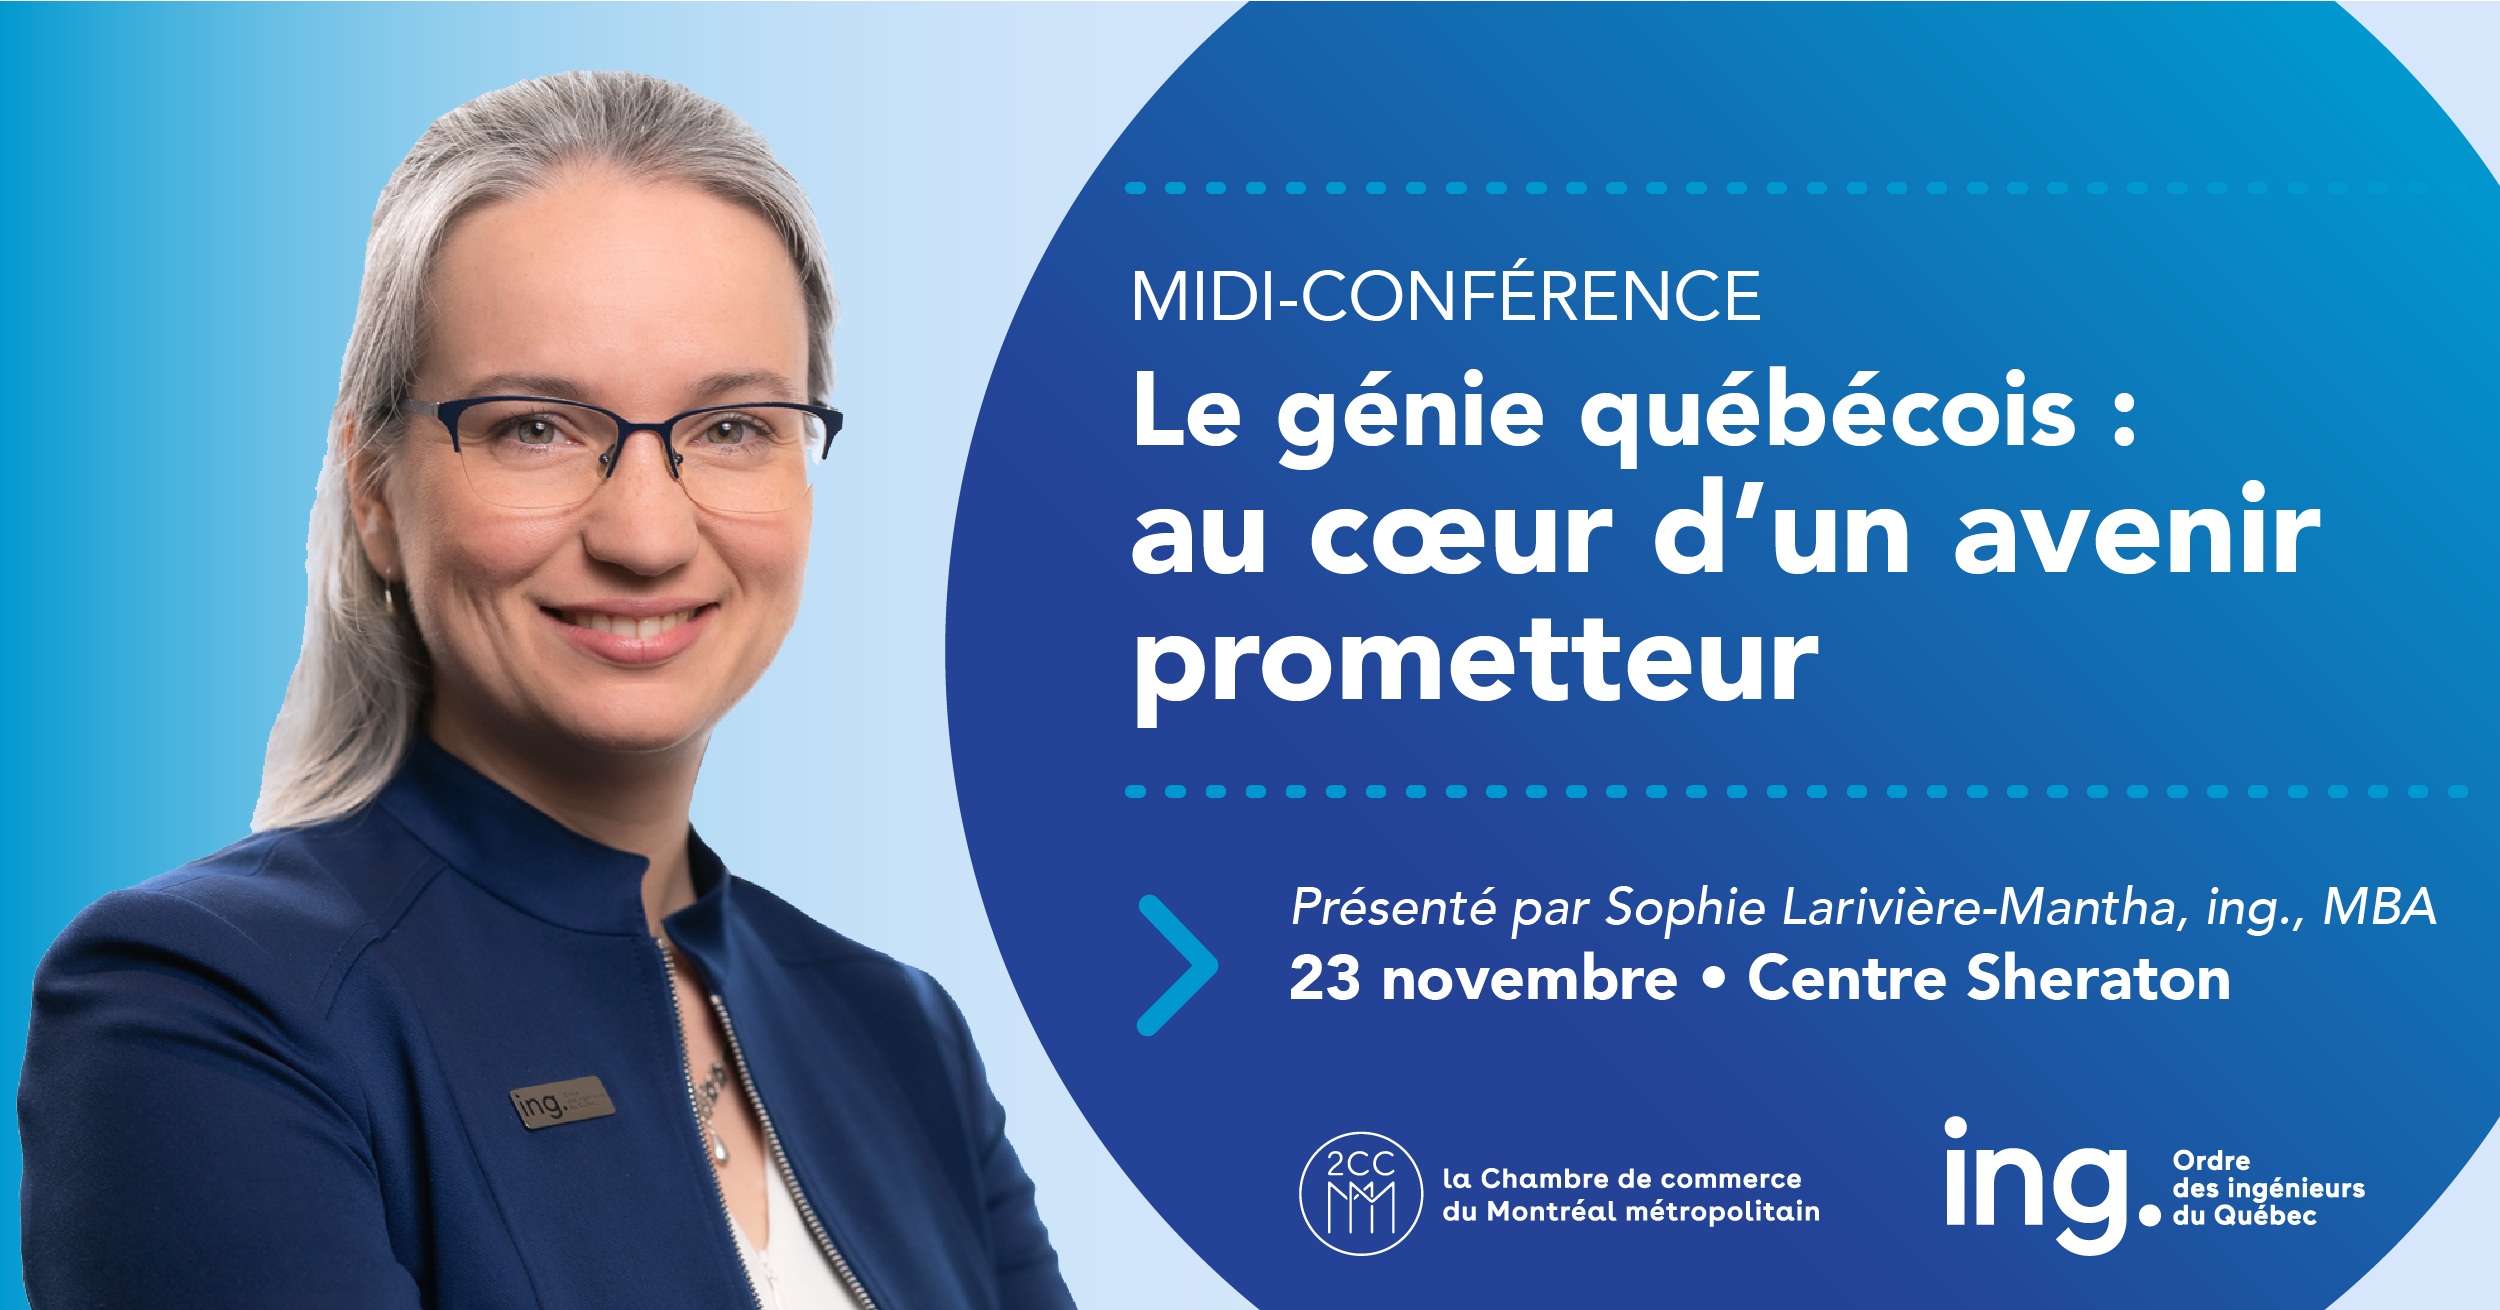 Midi-conférence : le génie québécois au coeur d’un avenir prometteur